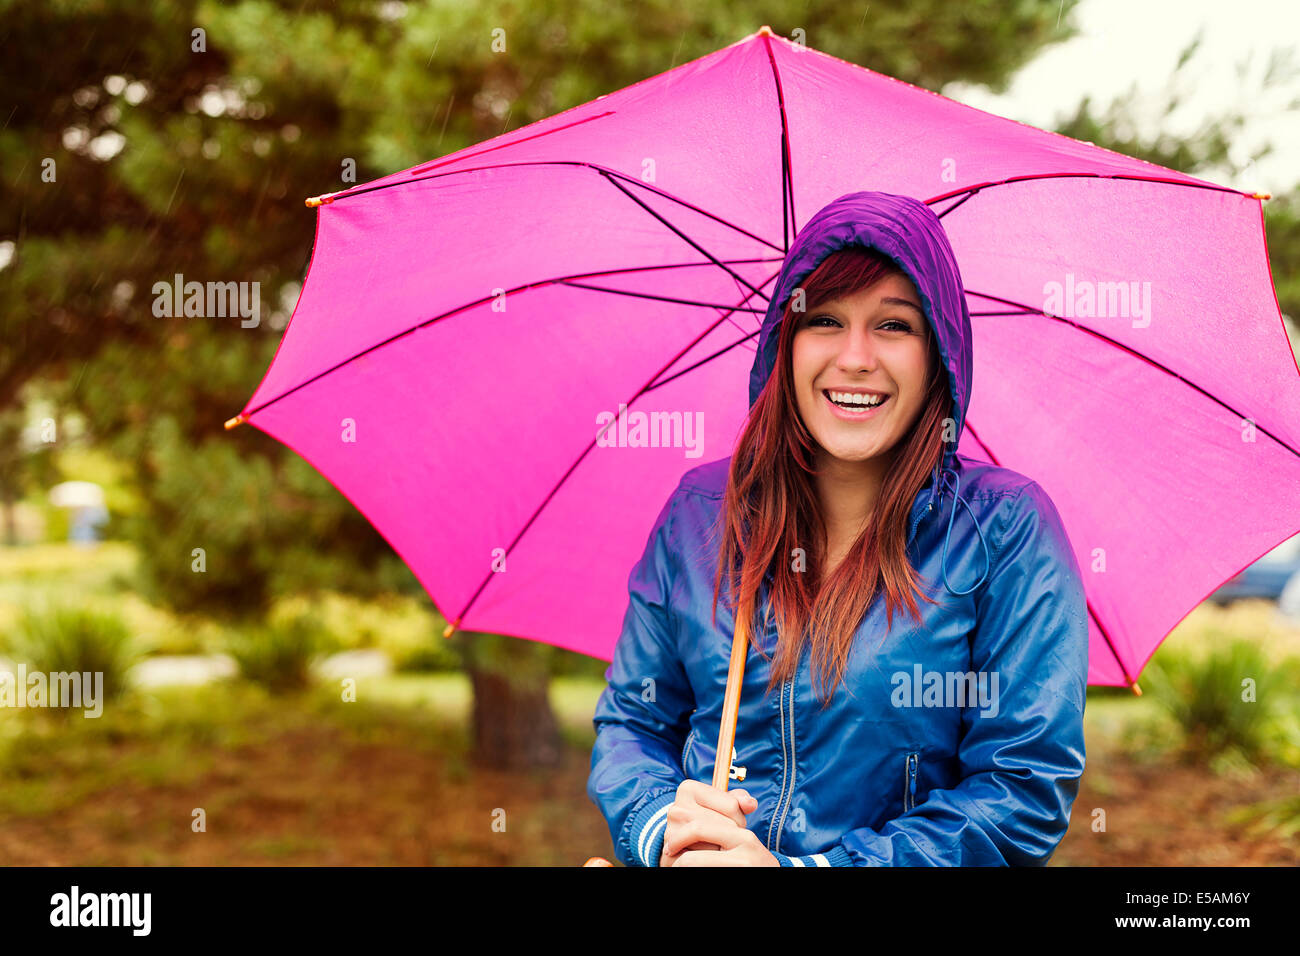 Portrait of happy woman with umbrella, Debica, Poland Stock Photo